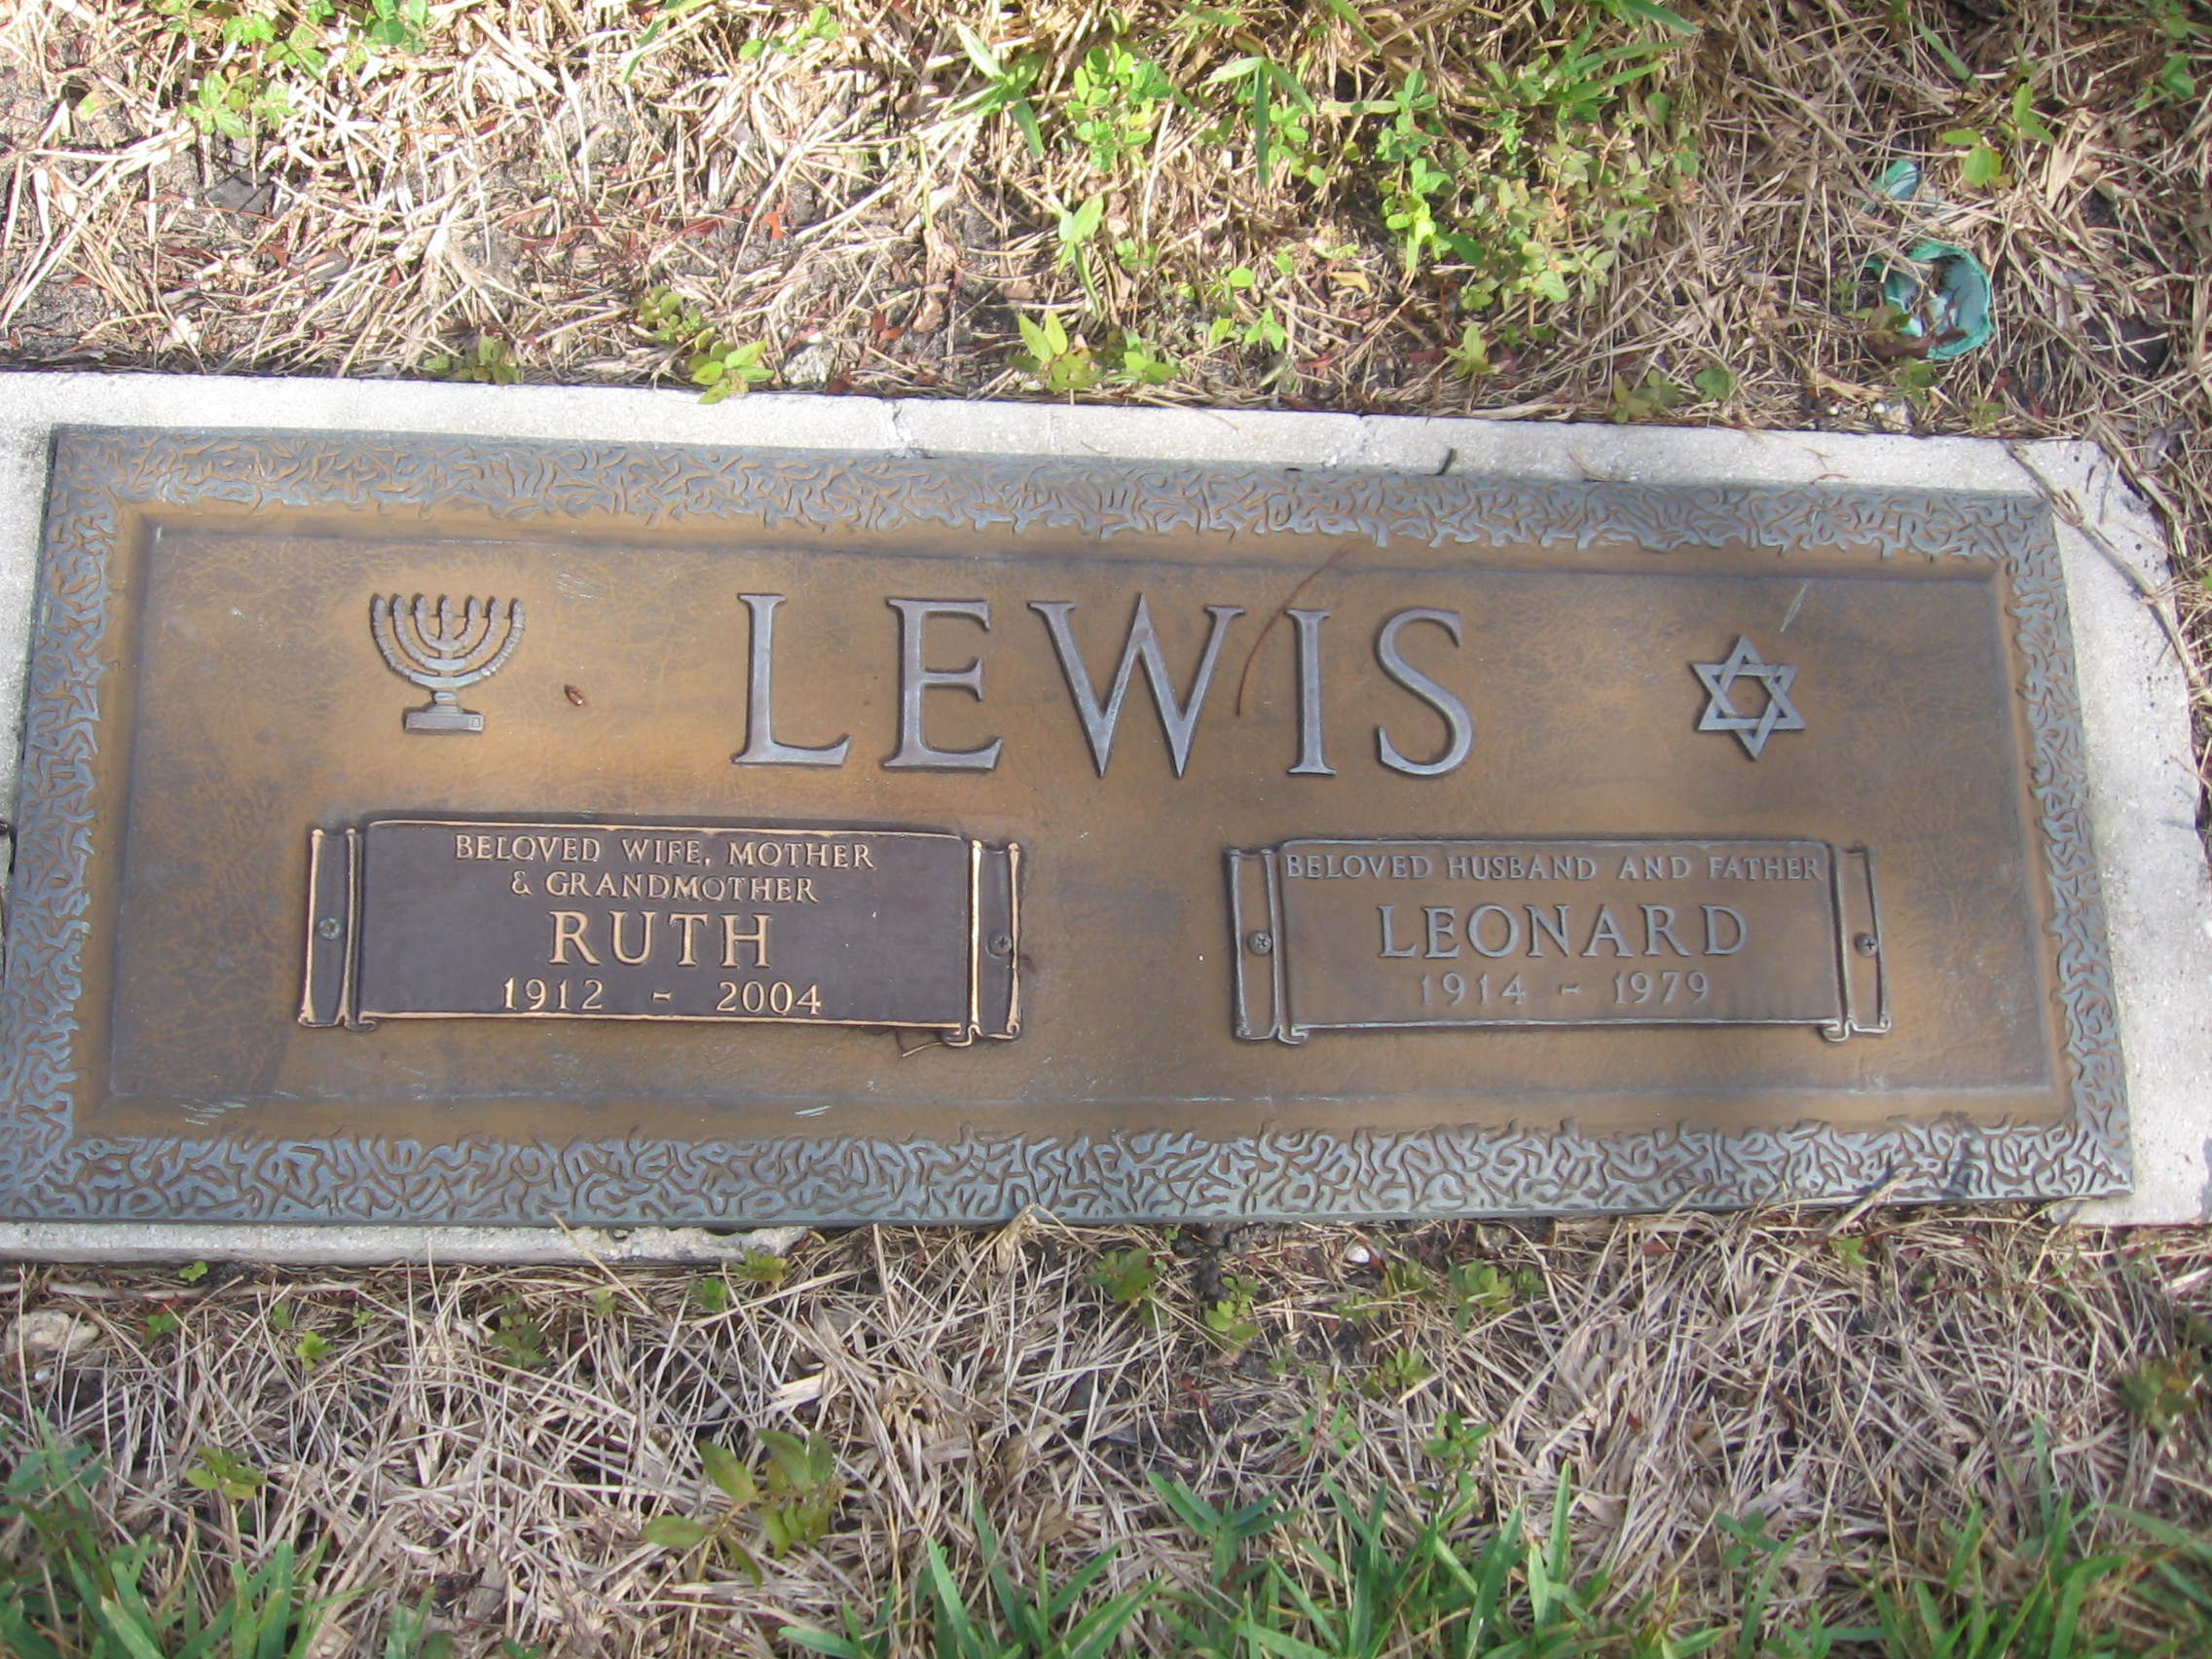 Leonard Lewis